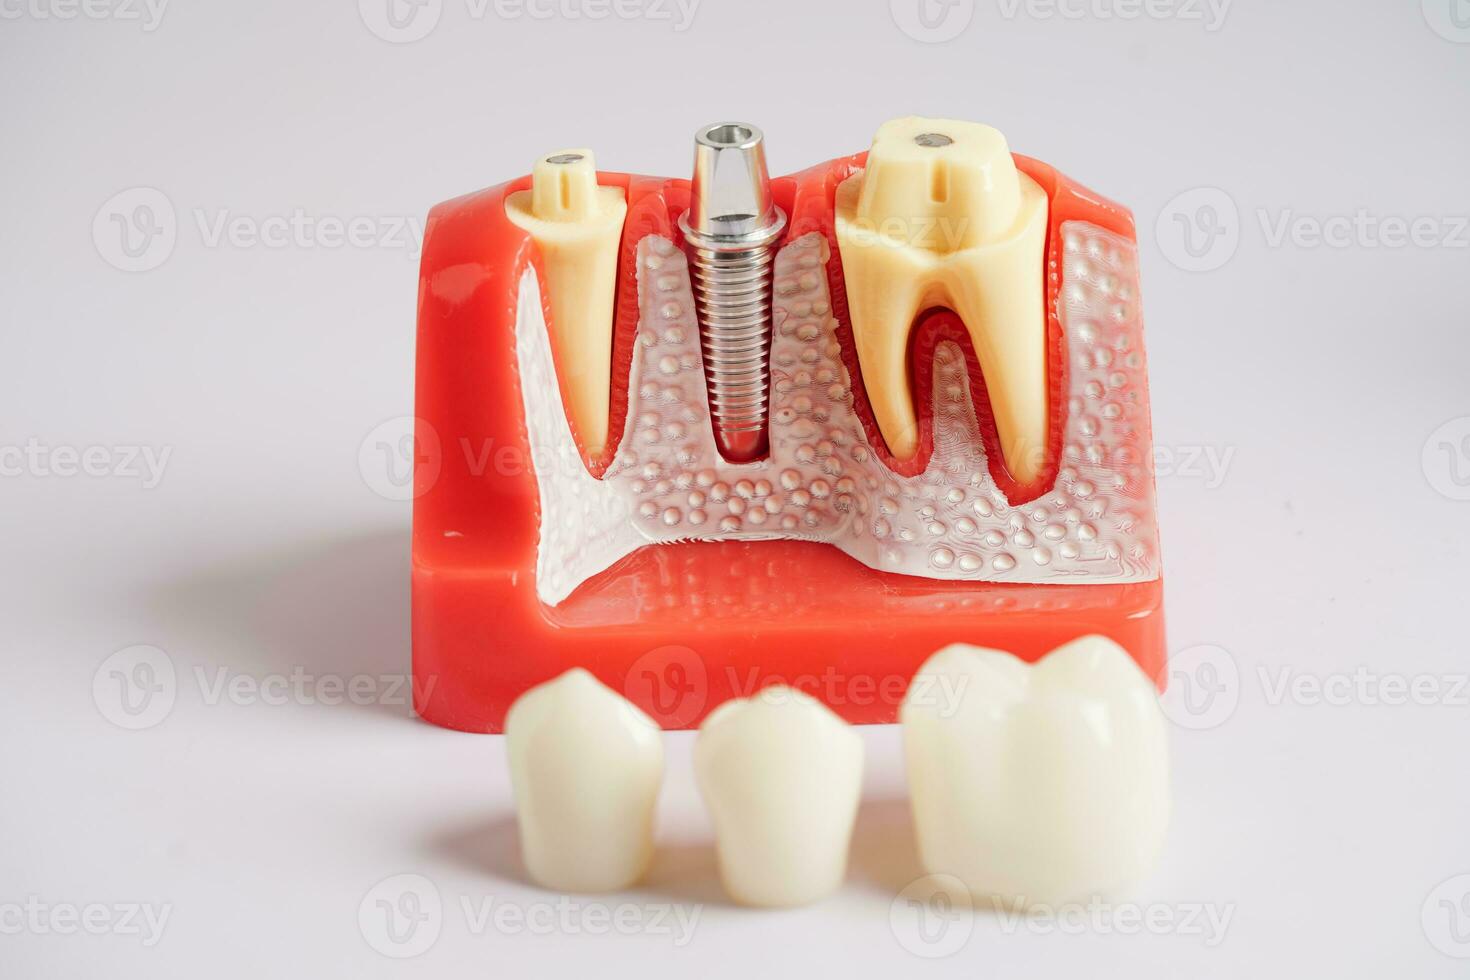 dental implantera, artificiell tand rötter in i käke, rot kanal av dental behandling, gummi sjukdom, tänder modell för tandläkare studerar handla om tandvård. foto